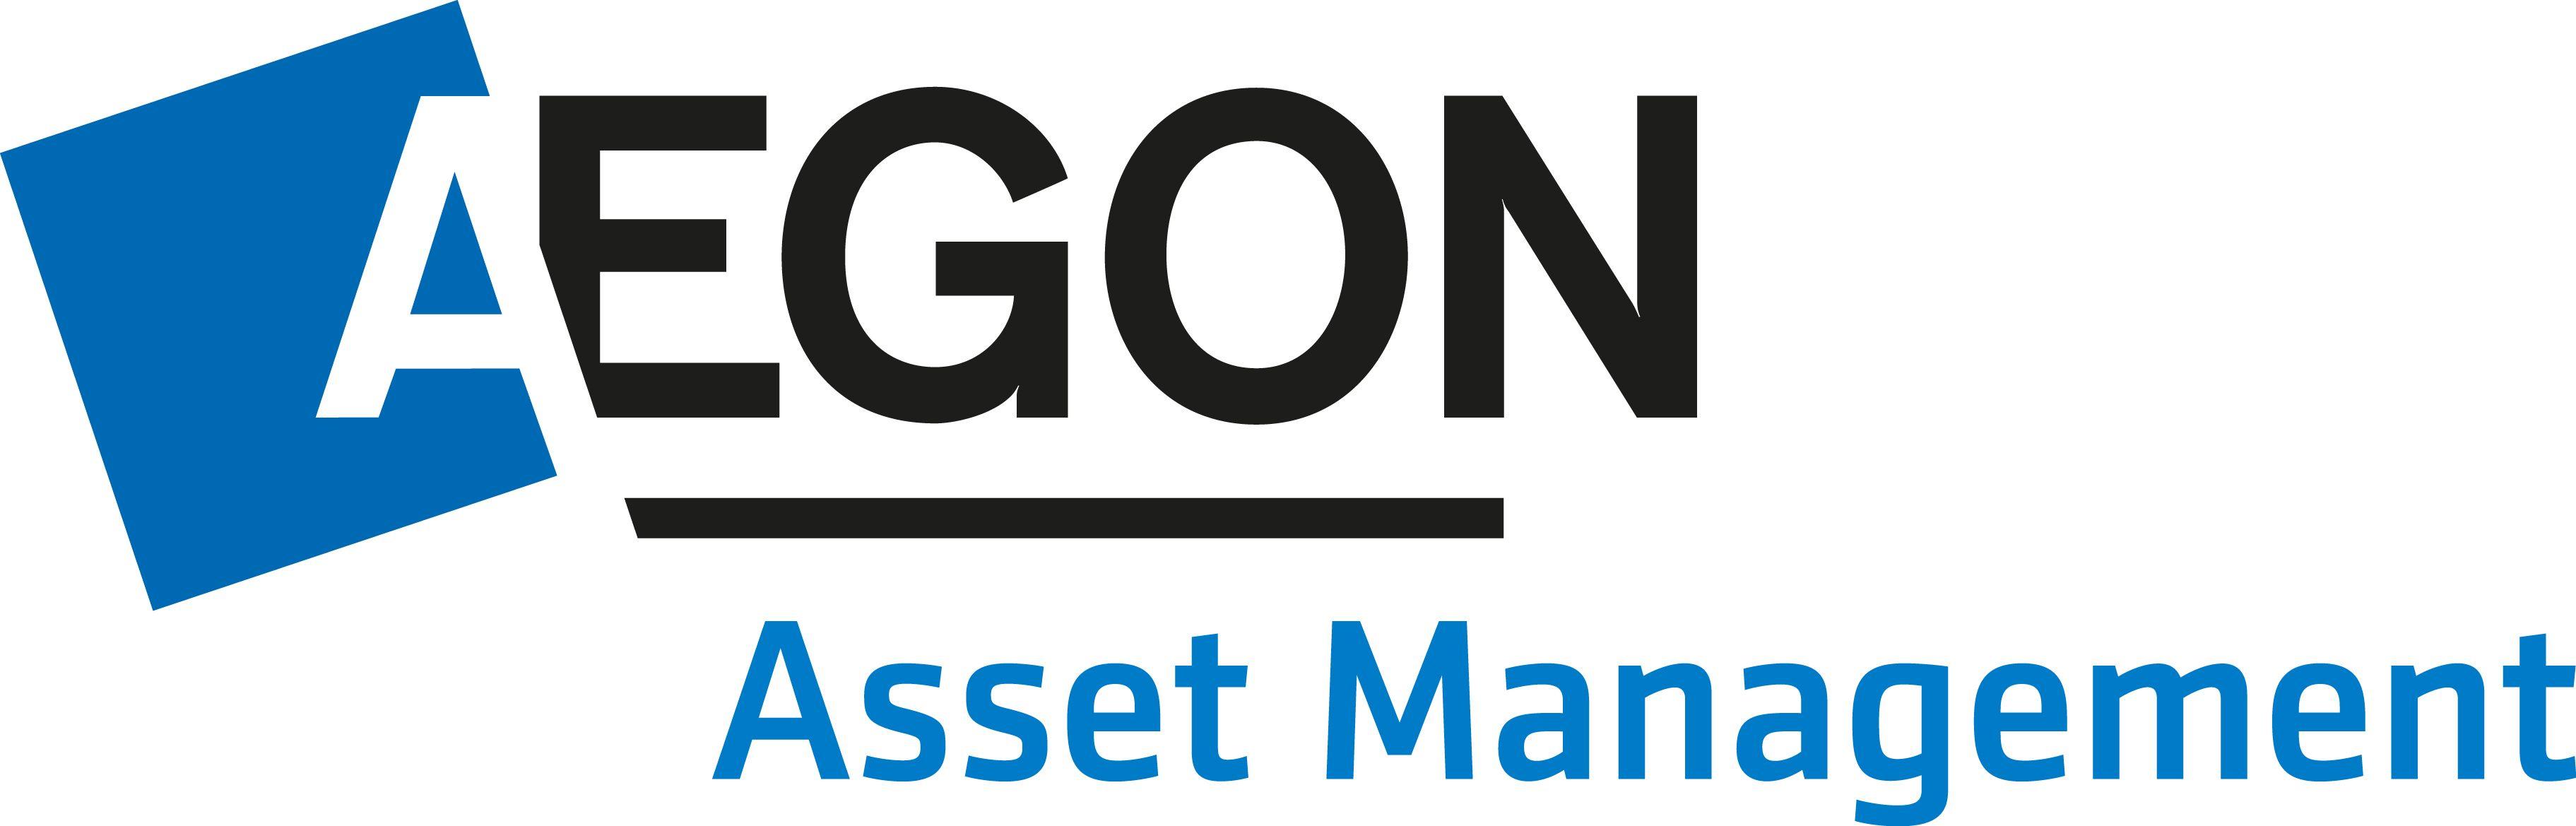 Management Logo - Aegon Asset Management Logo -